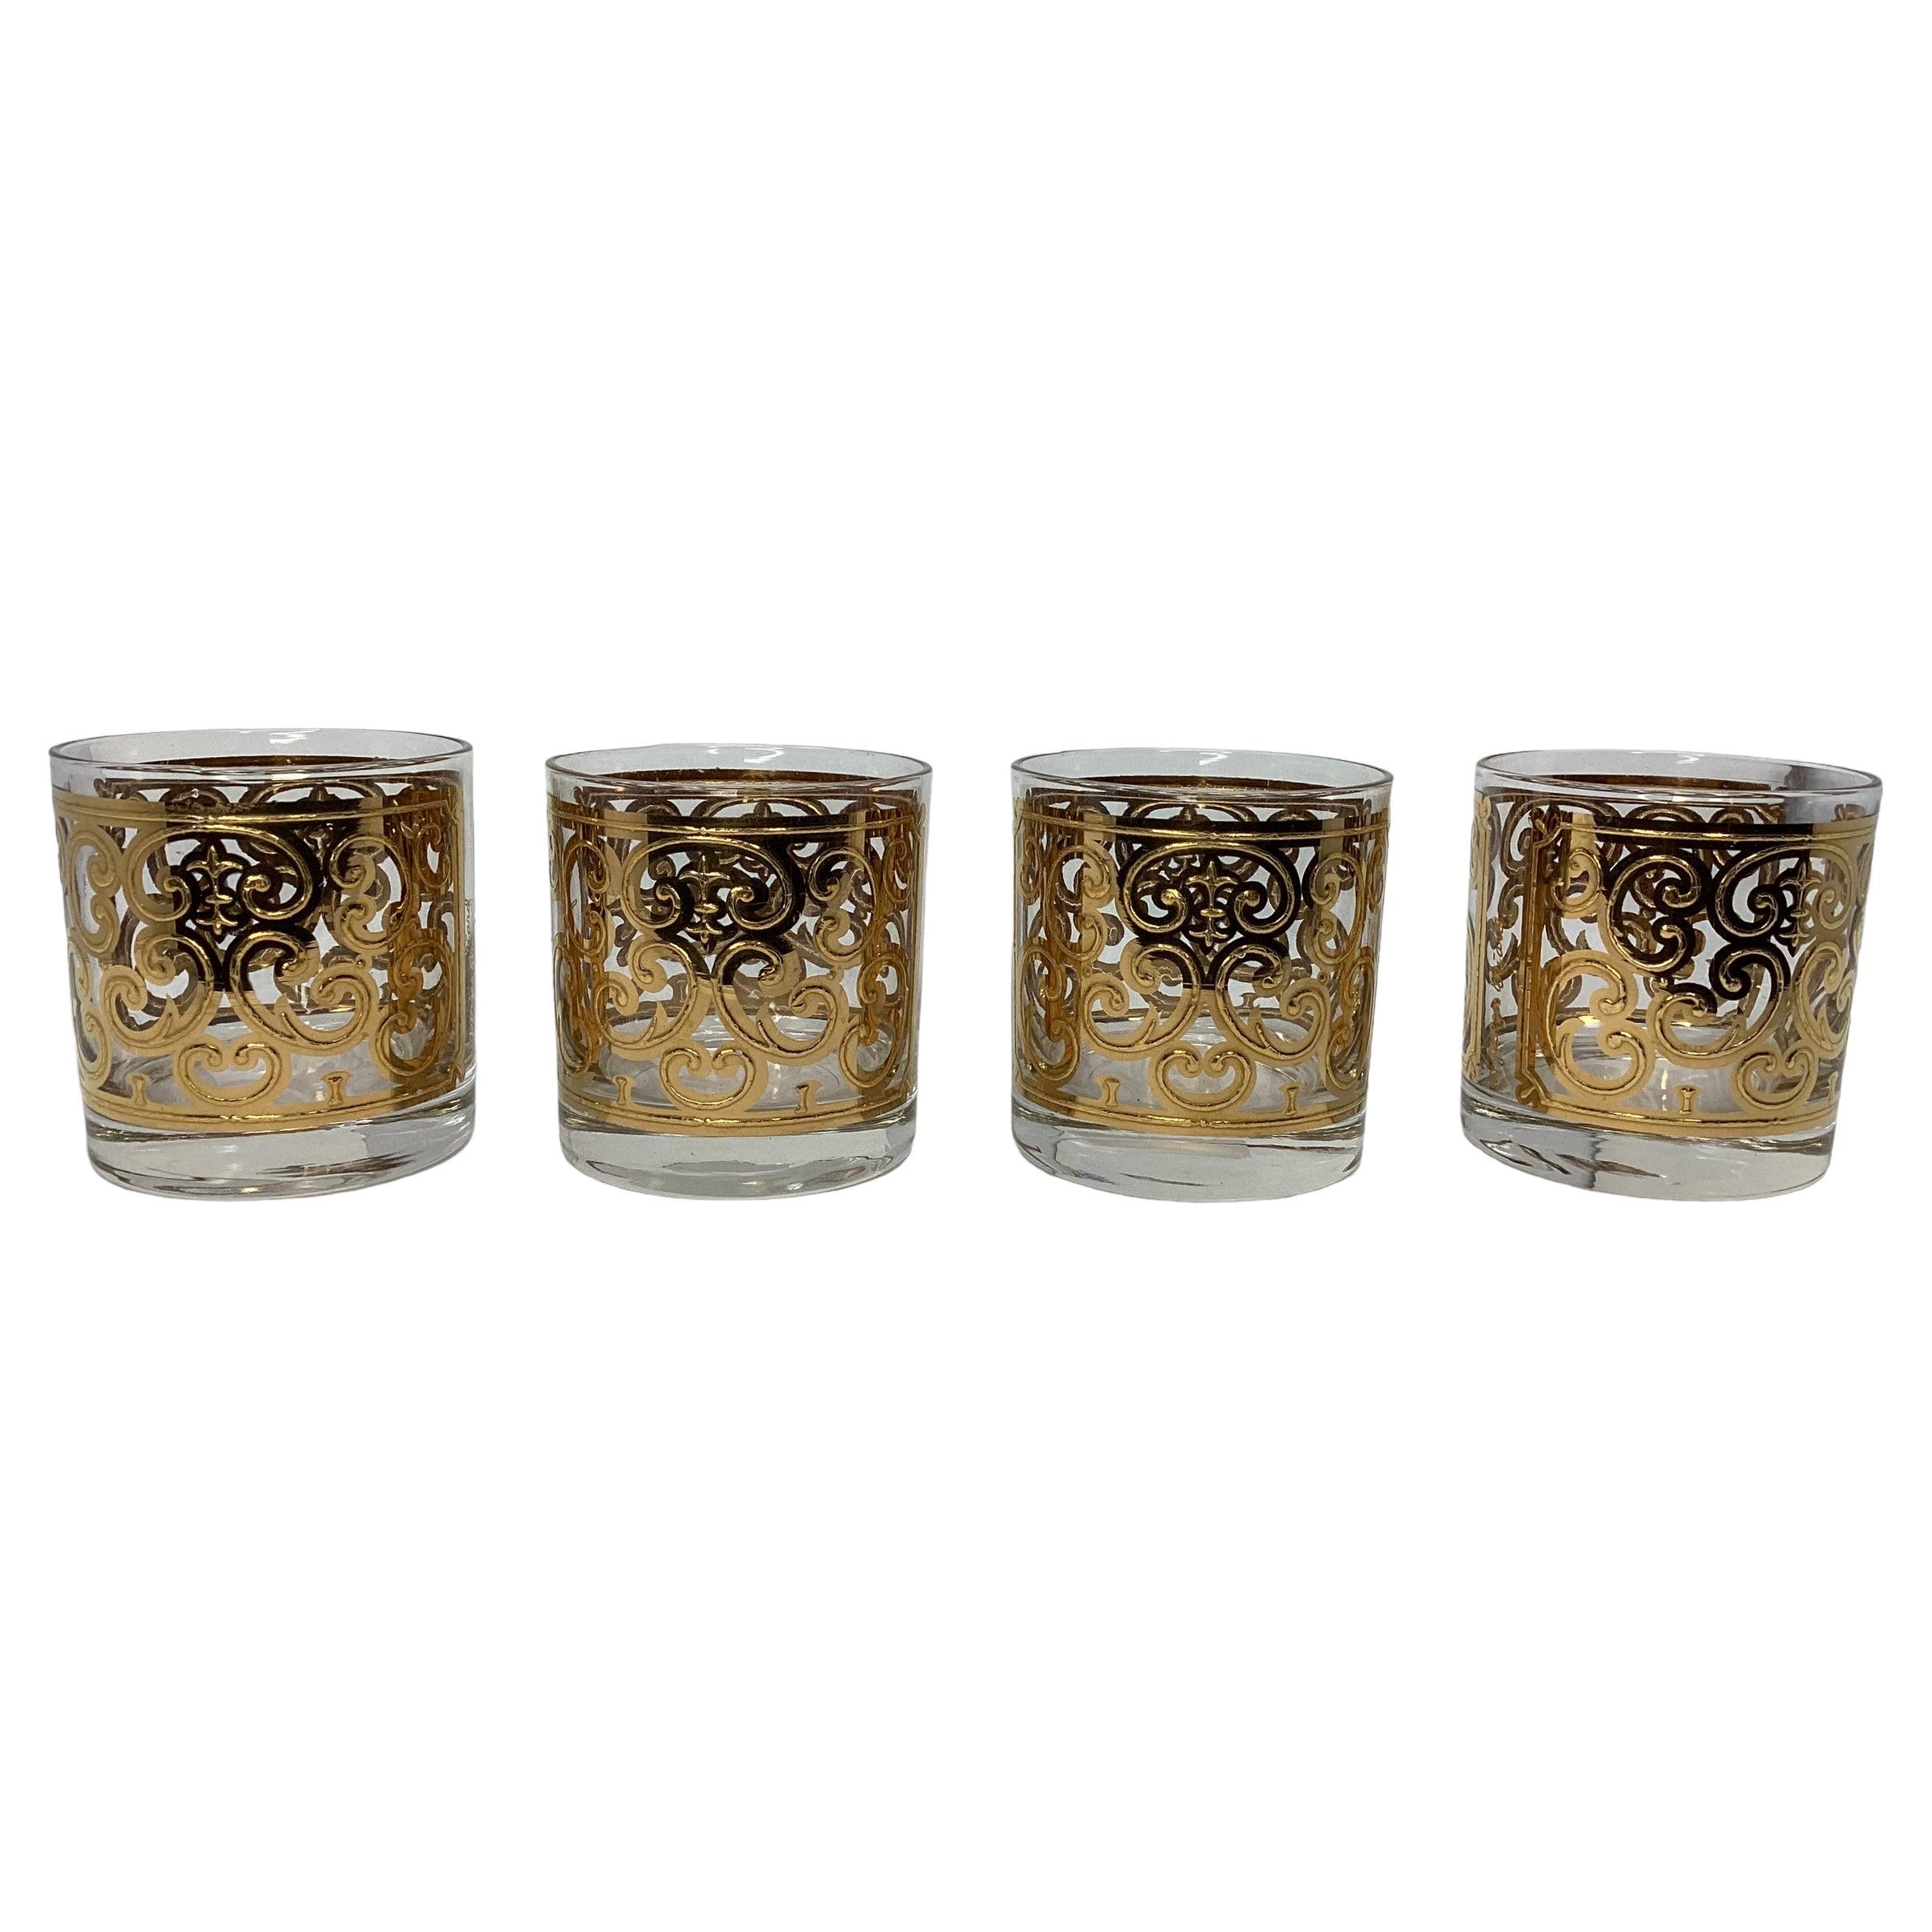 Georges Briard ensemble de quatre verres vintage espagnols à motif roches dorées 